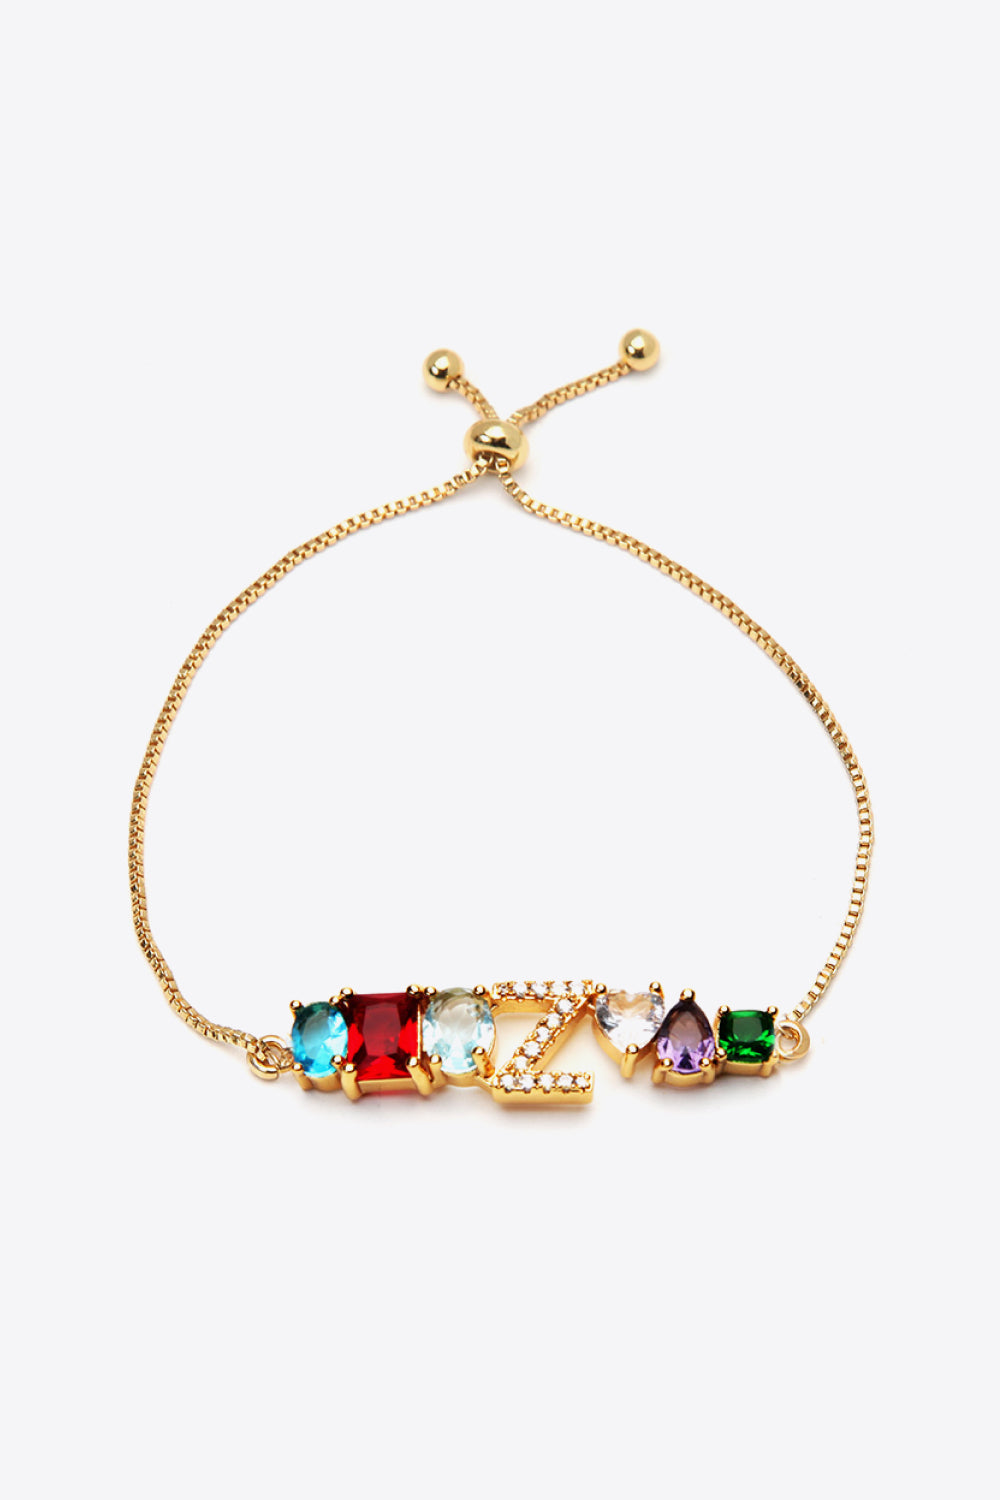 U to Z Zircon Bracelet - Z / One Size - Women’s Jewelry - Bracelets - 16 - 2024